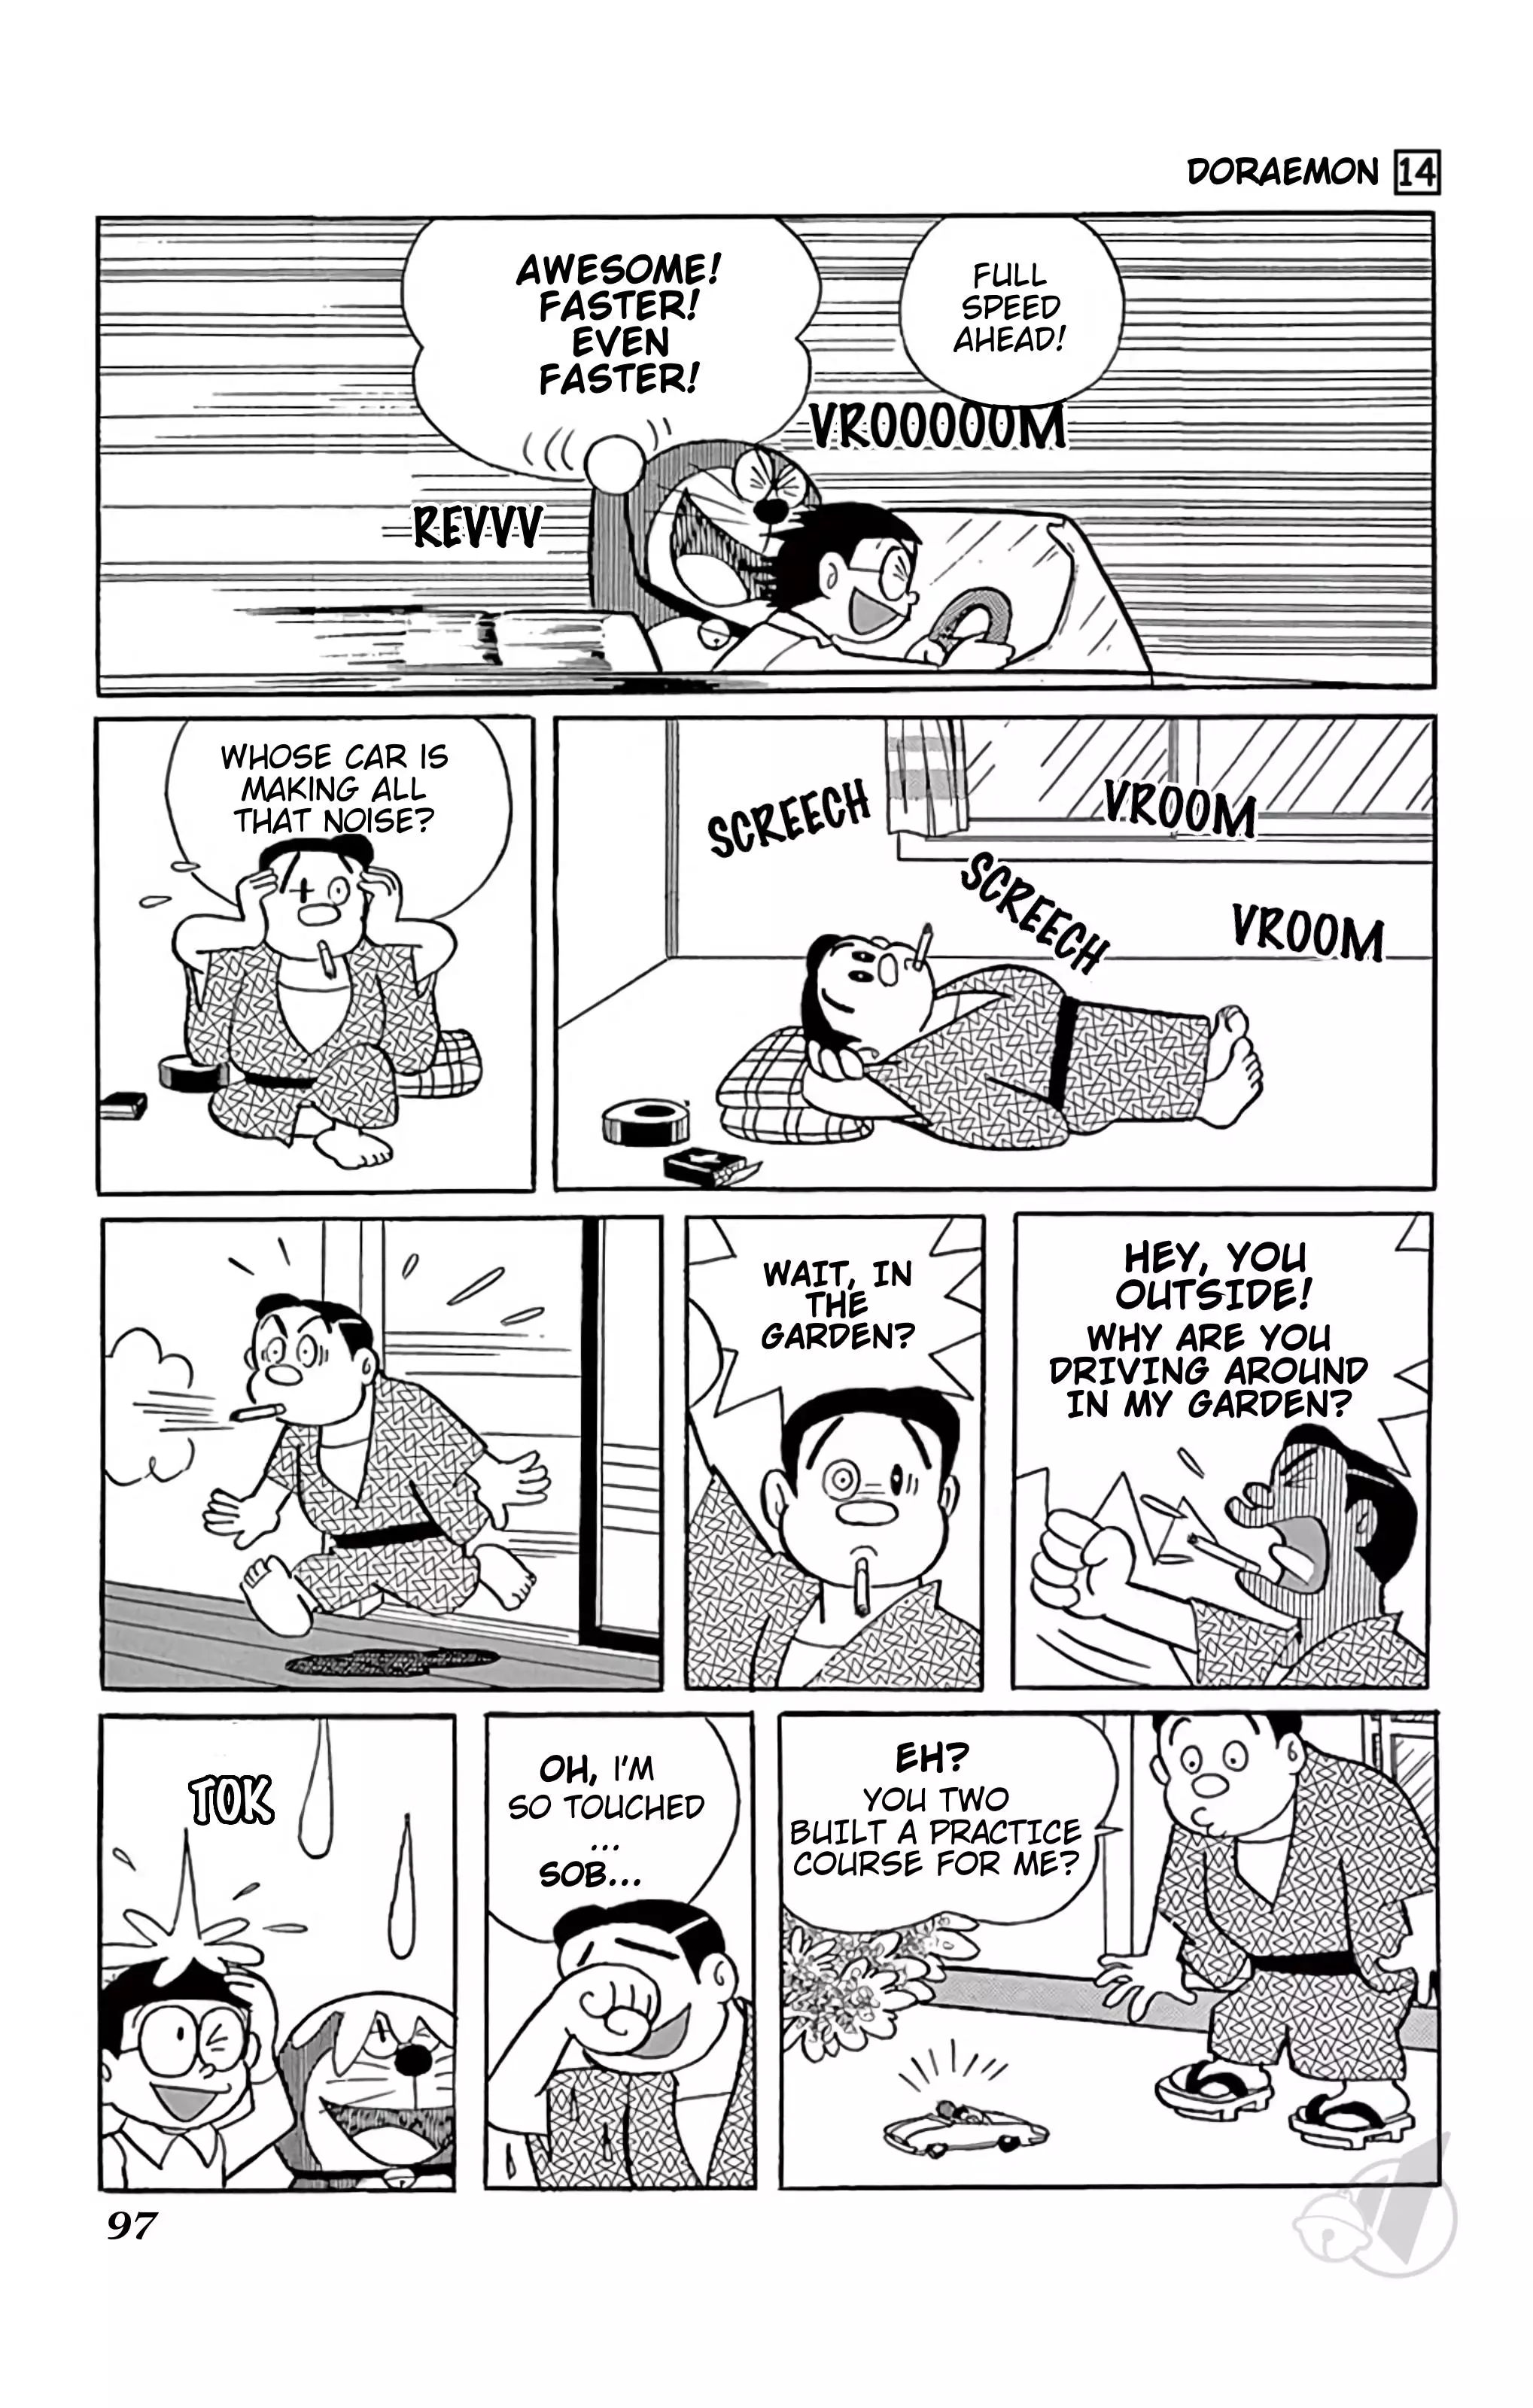 Doraemon - 256 page 8-685d5736